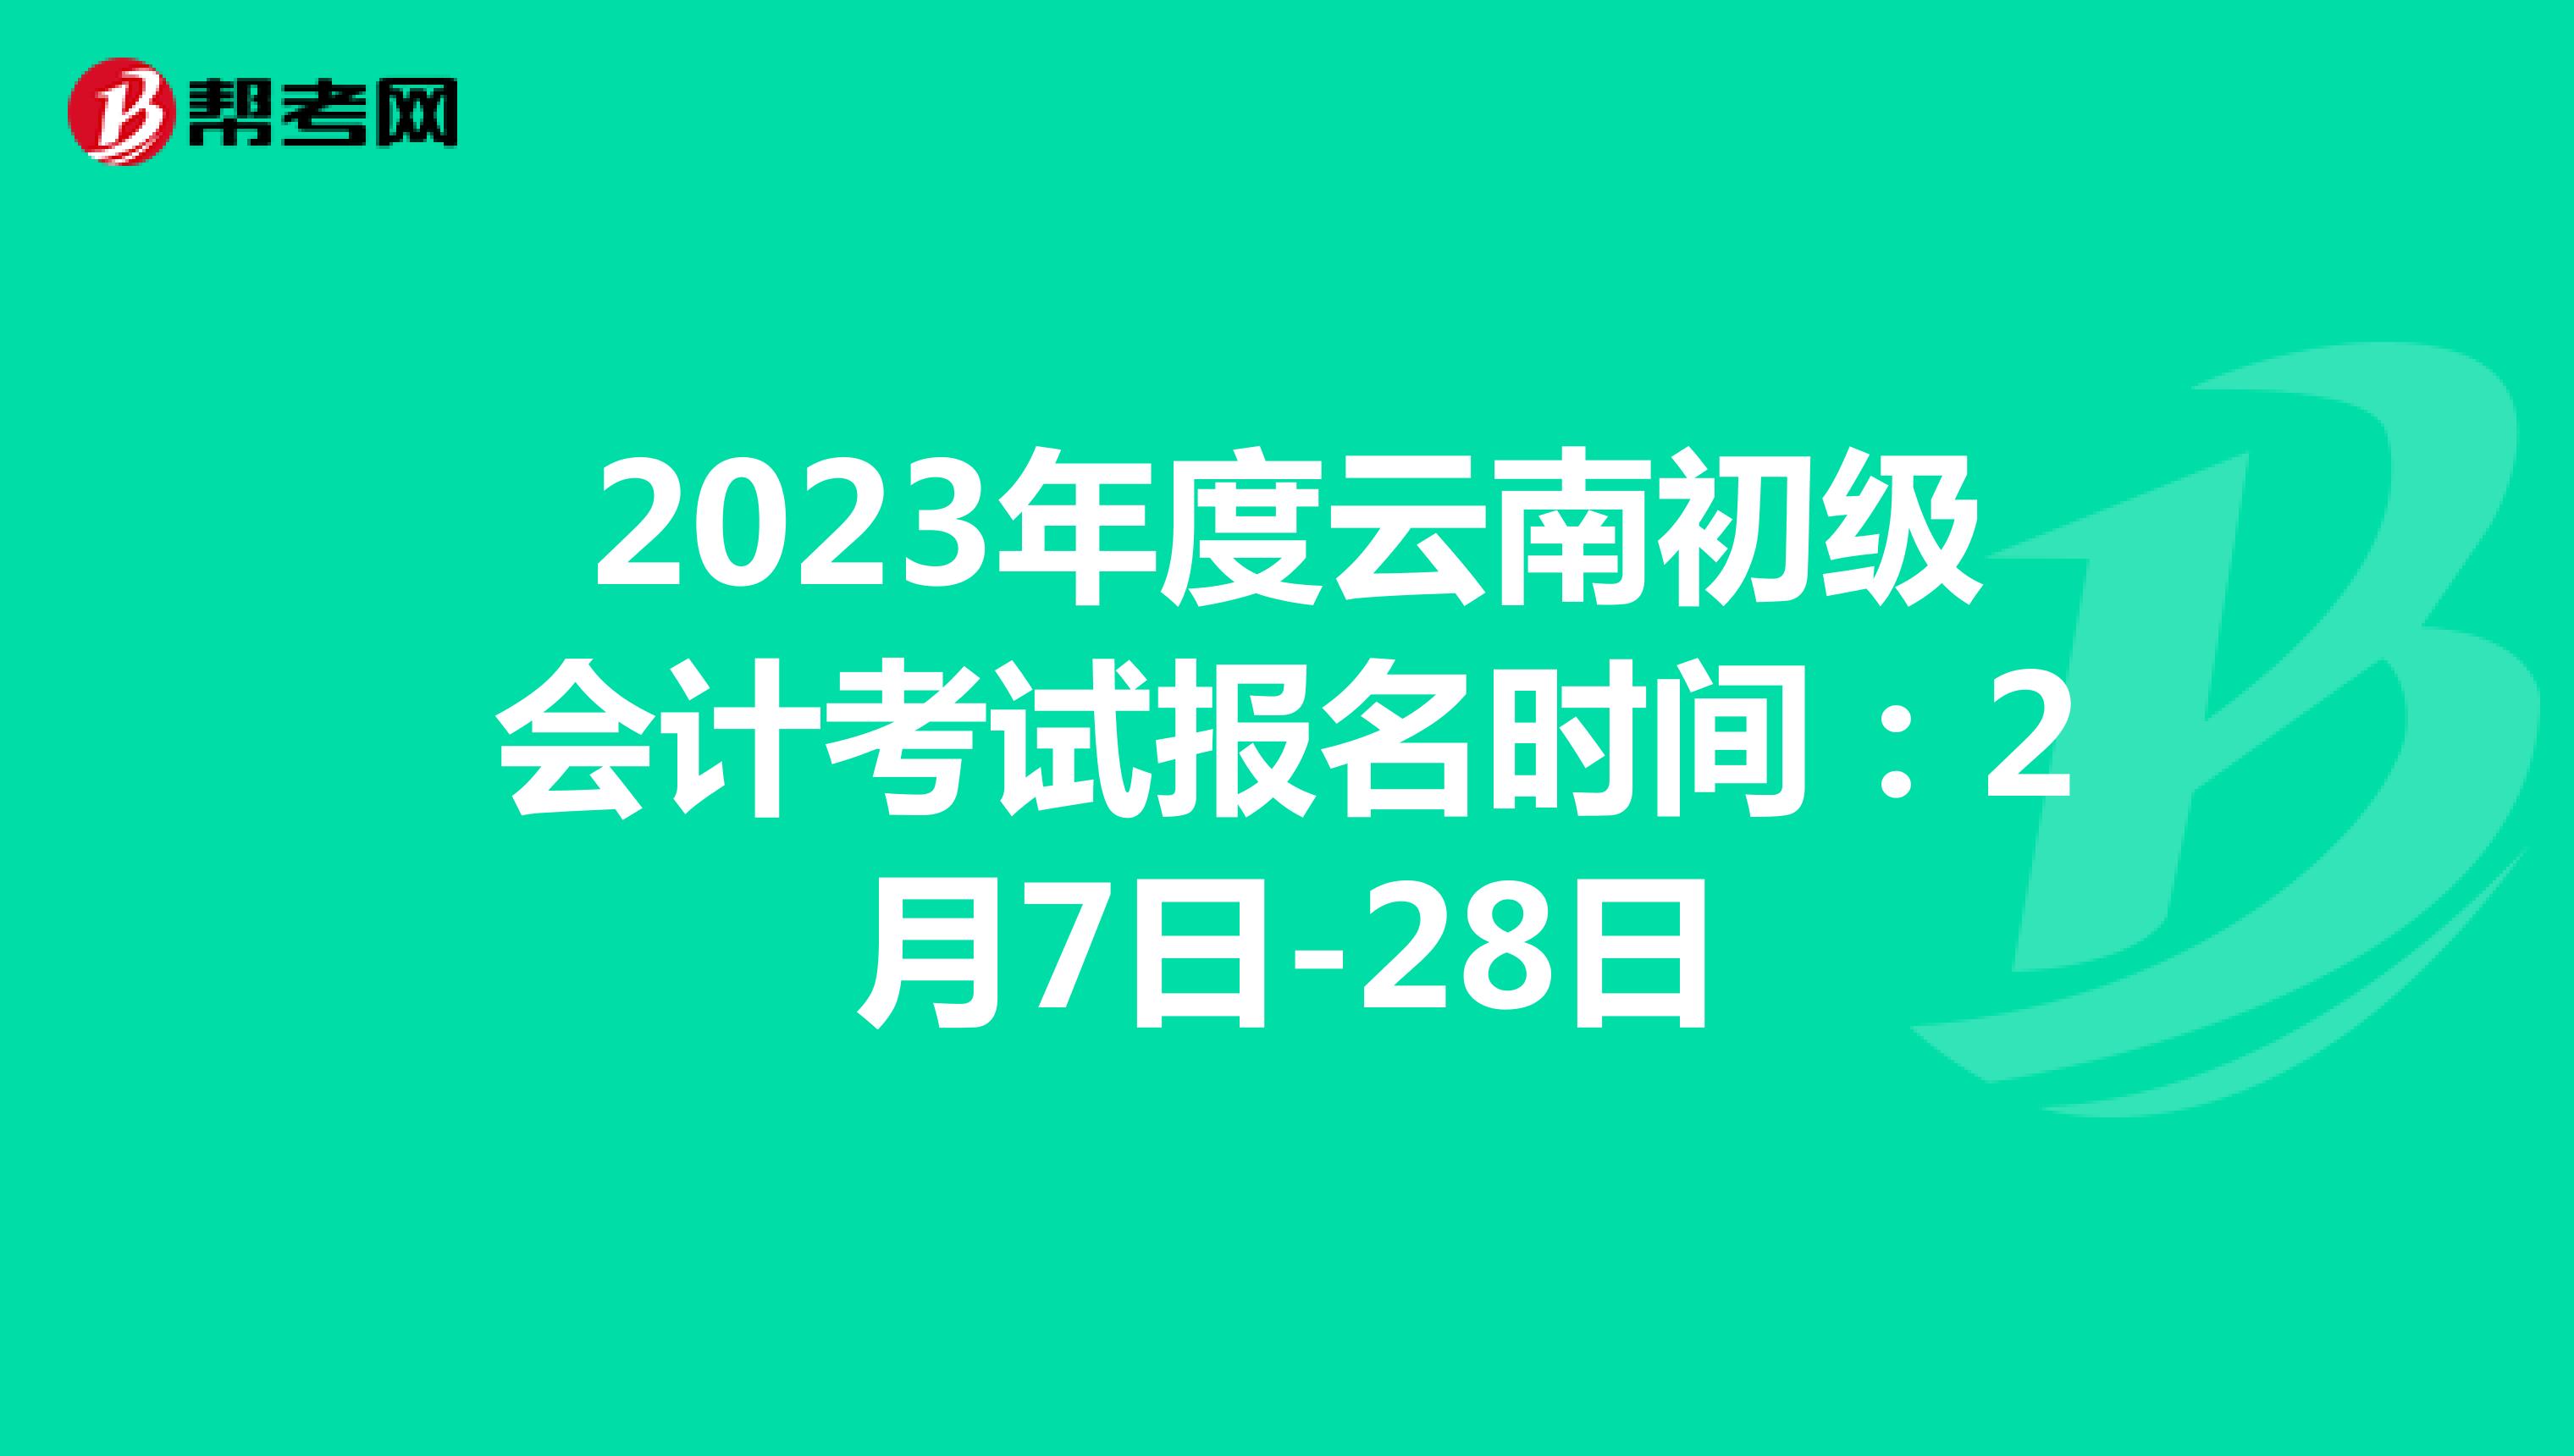 2023年度云南初级会计考试报名时间：2月7日-28日